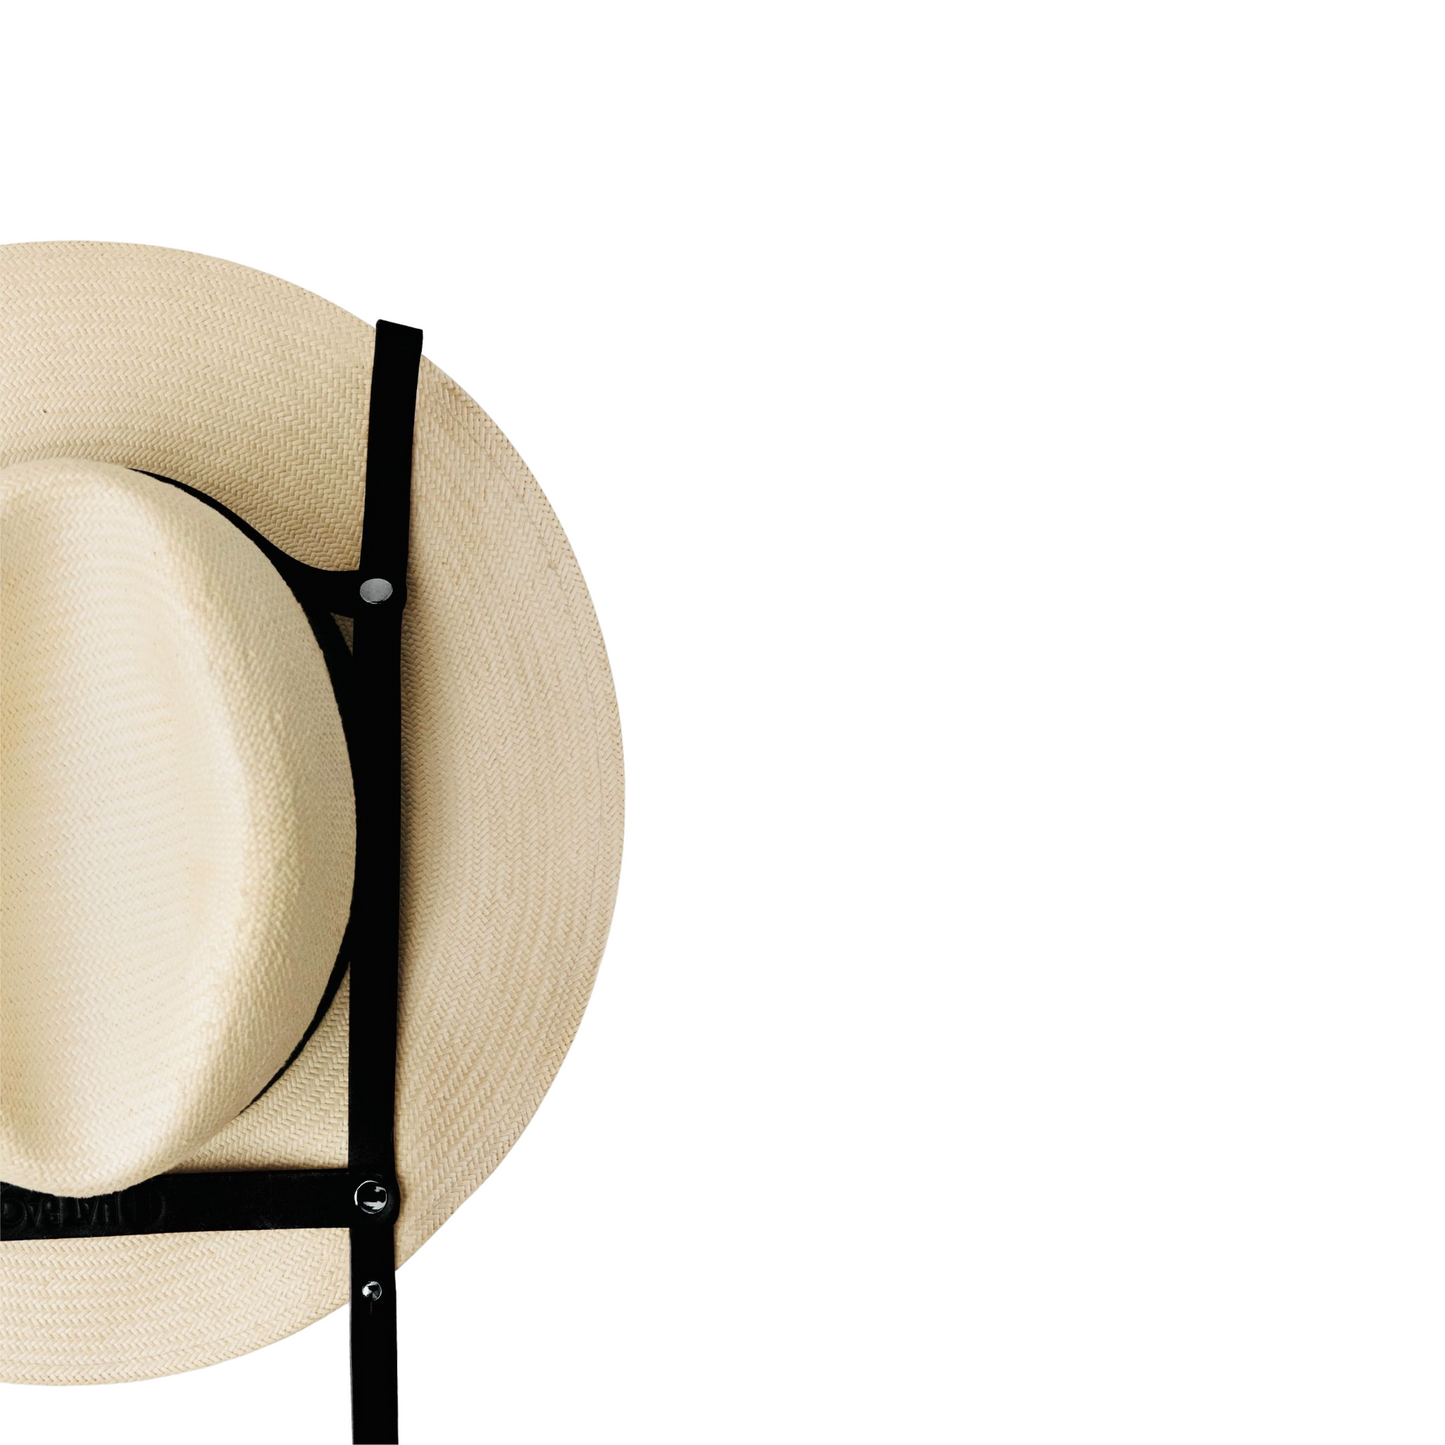 "Los Angeles" Hat Bag Hat Holder in black leather and adjustable black strap - hat bag paris